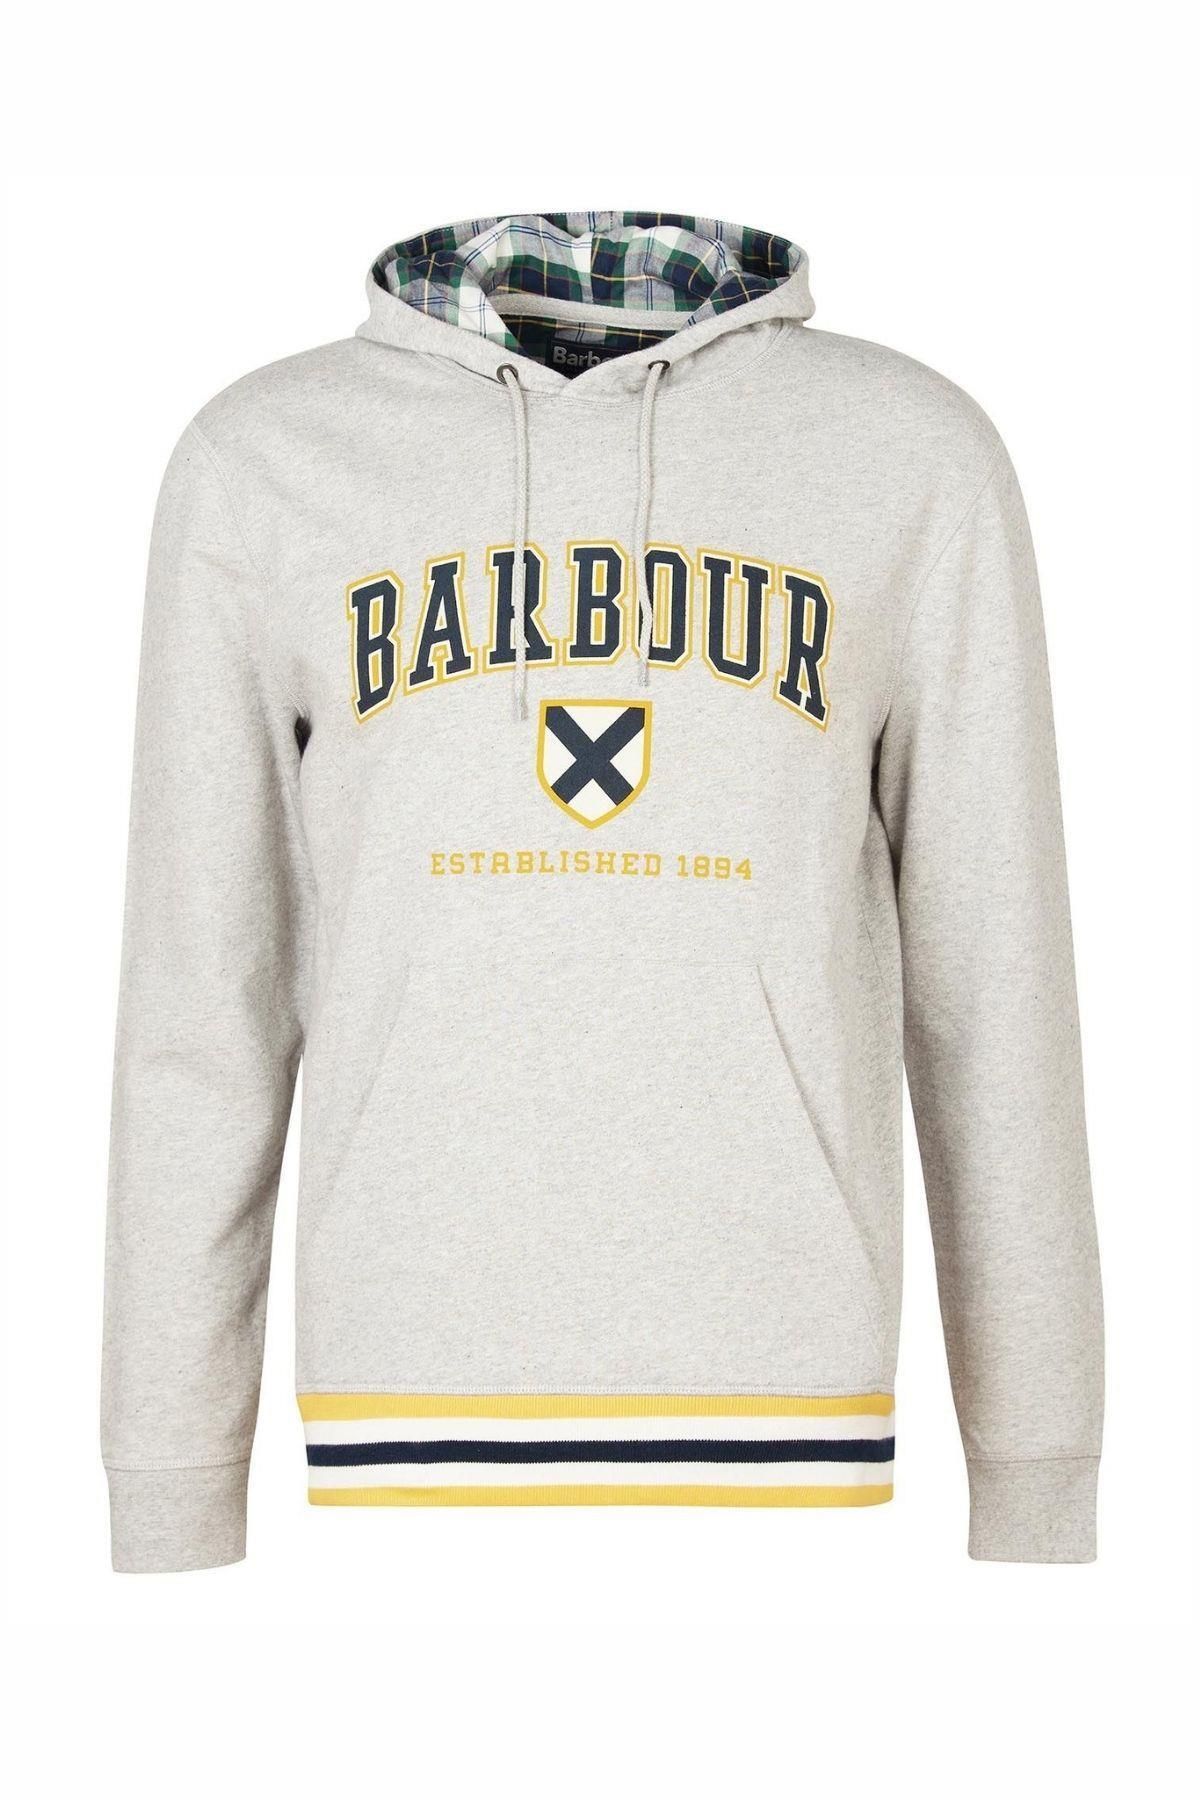 Barbour Linacre Logo Sweatshirt Gy52 Grey Marl